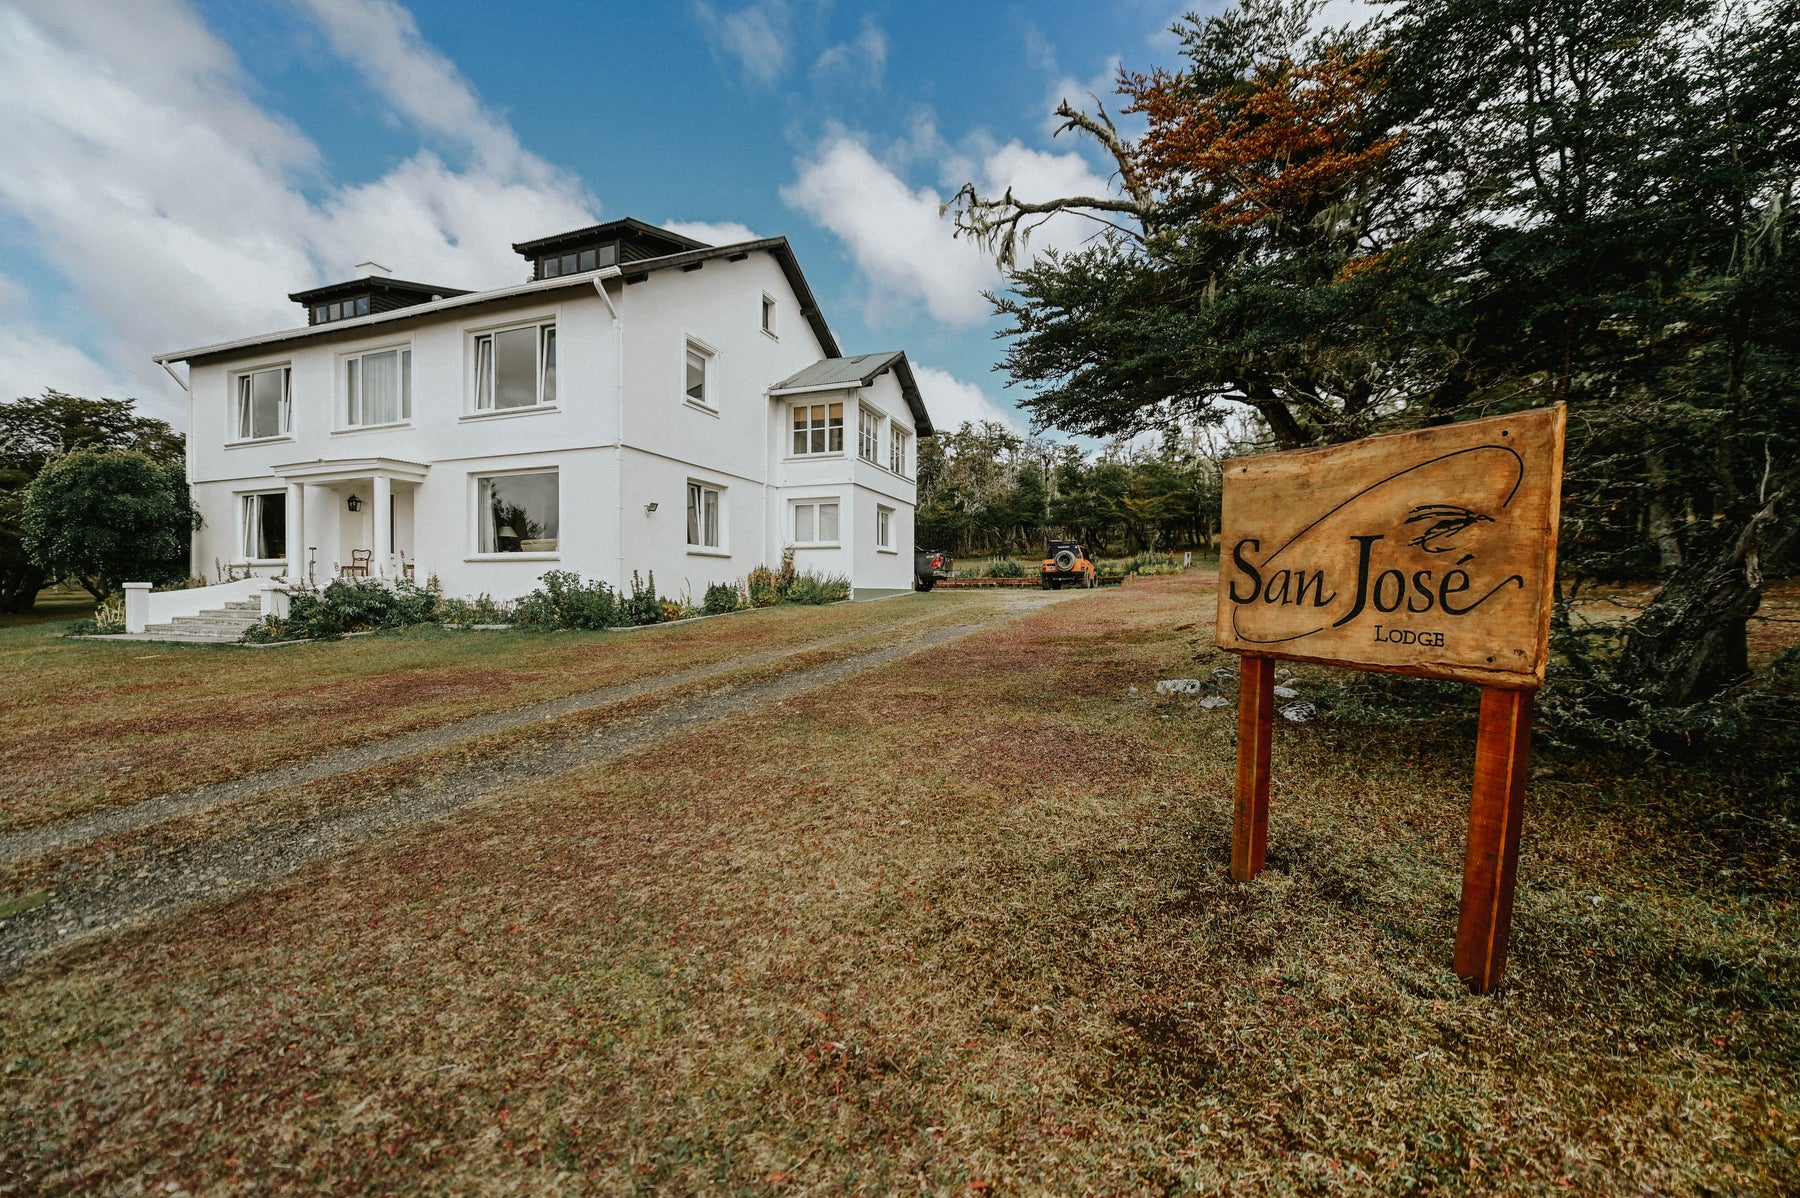 San Jose Lodge - Tierra del Fuego Argentina